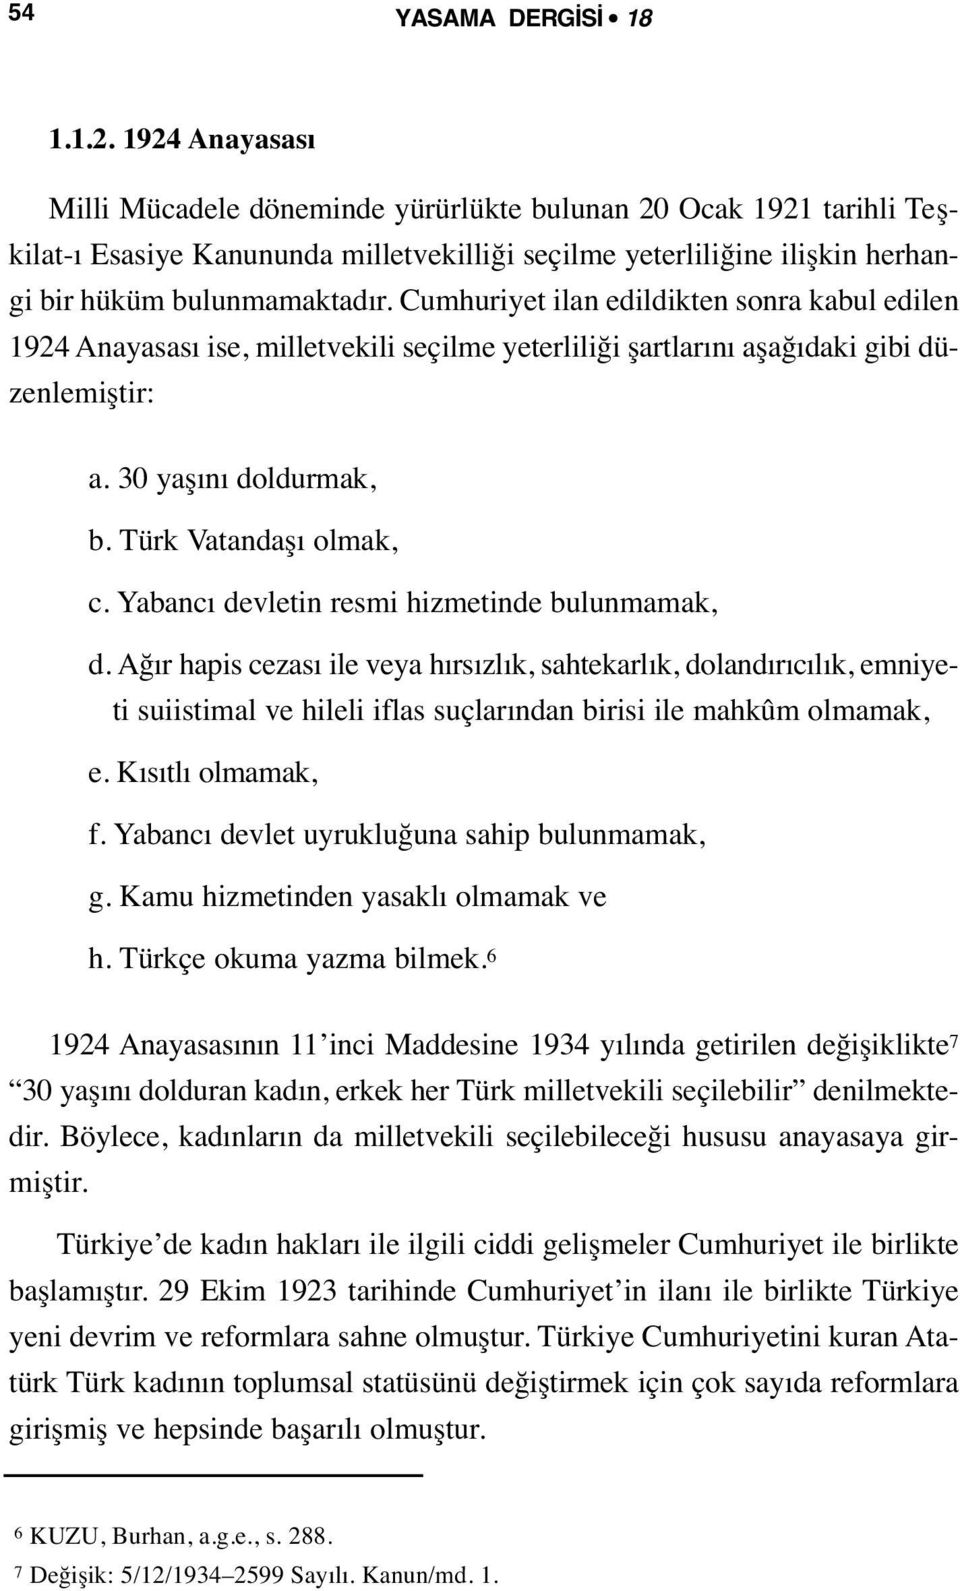 Cumhuriyet ilan edildikten sonra kabul edilen 1924 Anayasası ise, milletvekili seçilme yeterliliği şartlarını aşağıdaki gibi düzenlemiştir: a. 30 yaşını doldurmak, b. Türk Vatandaşı olmak, c.